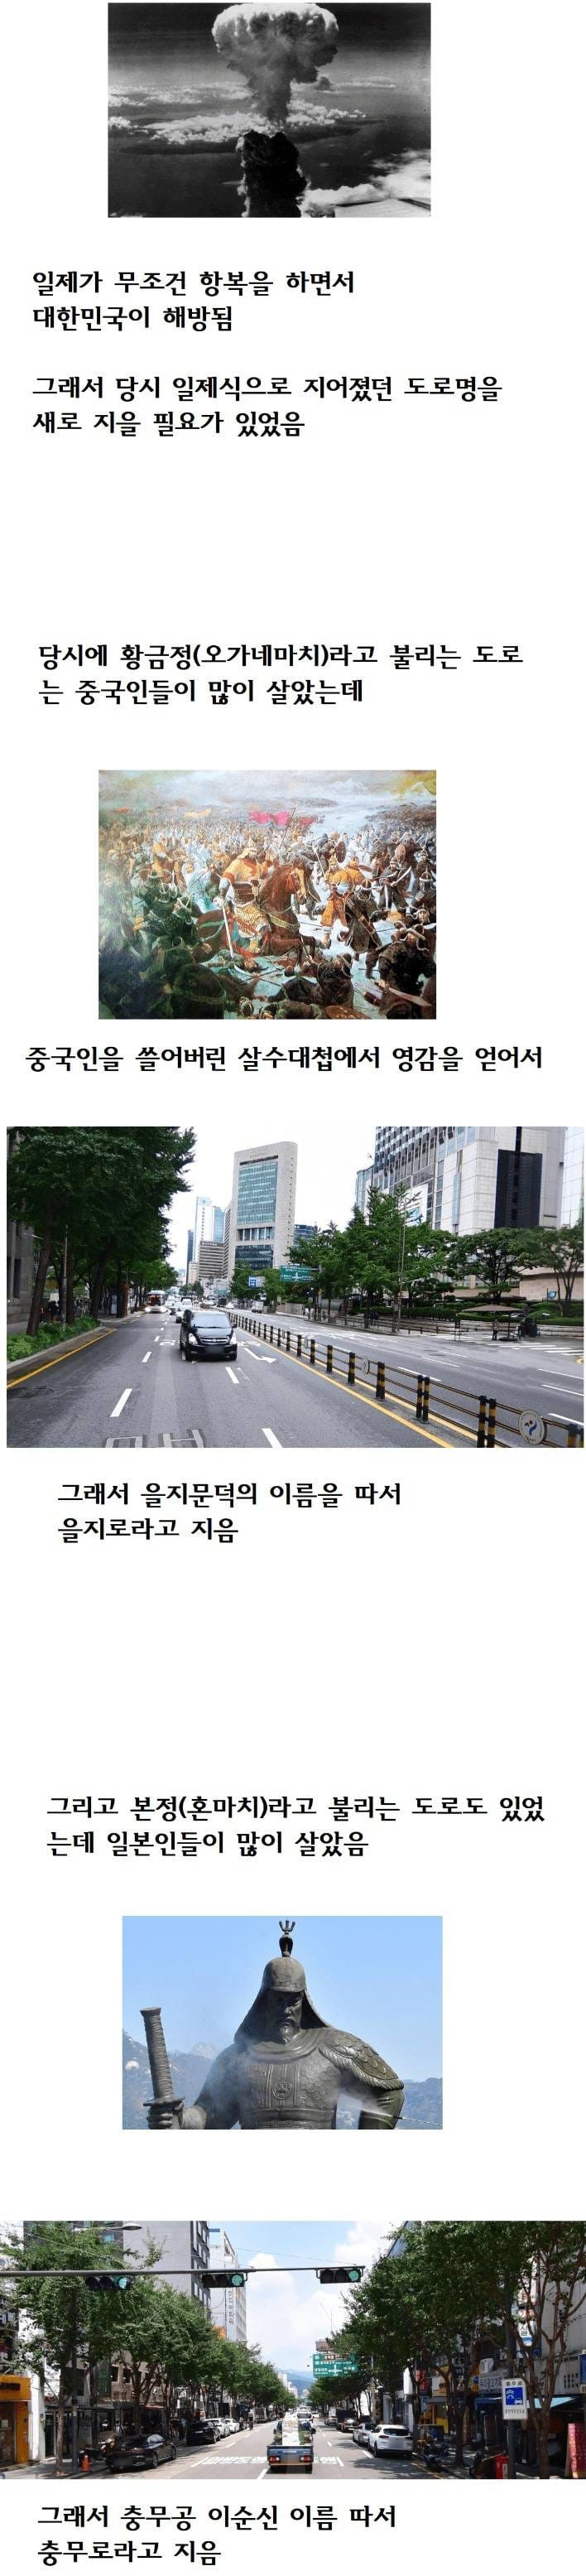 서울 도로명 유래